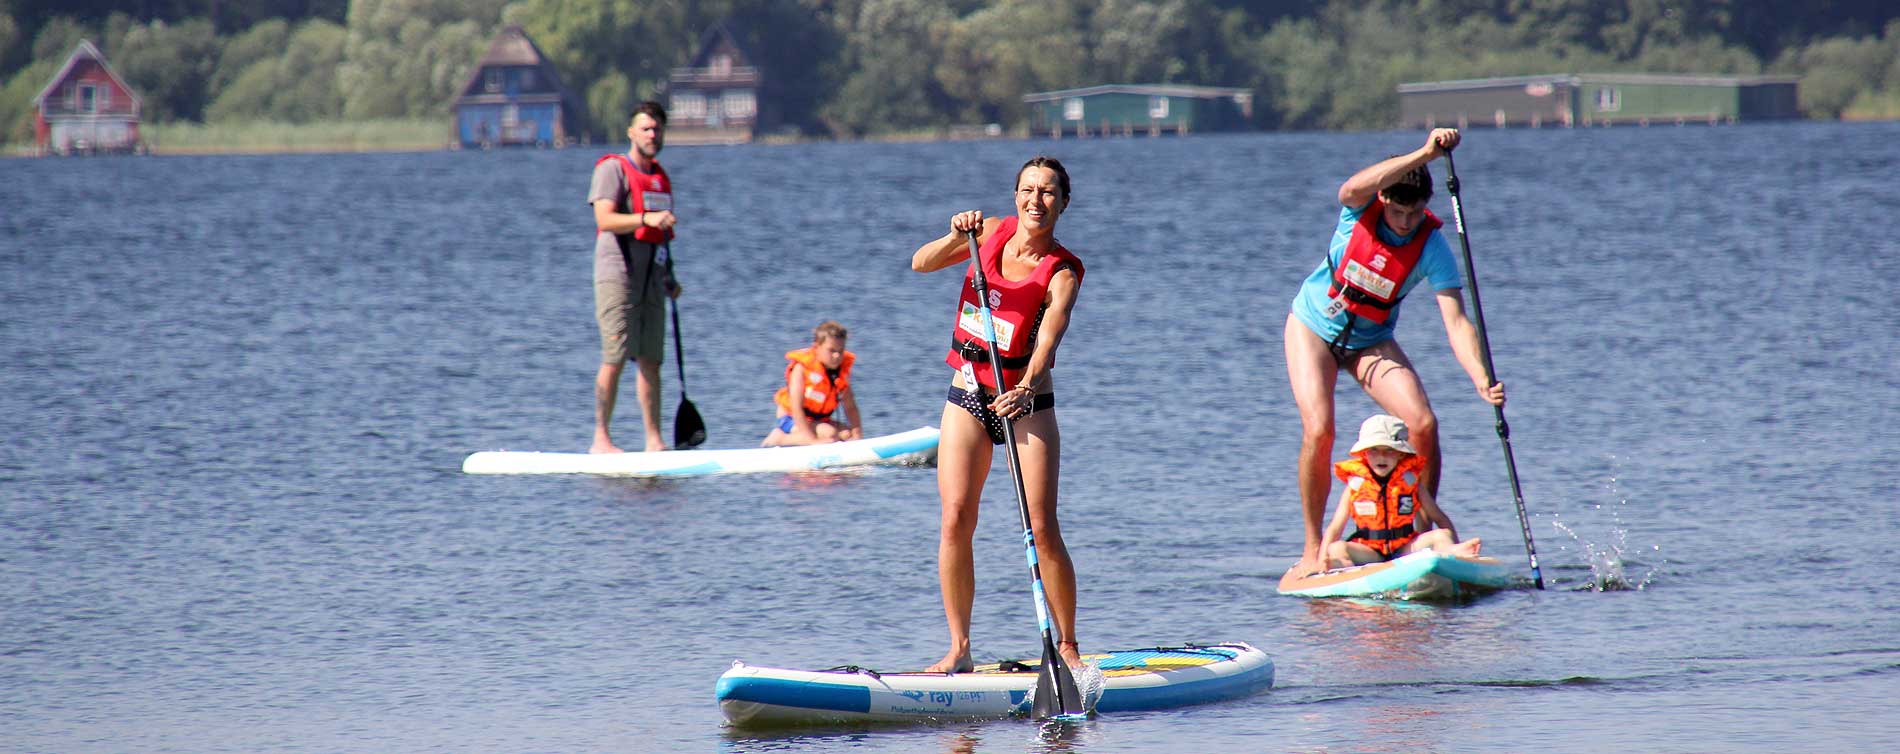 Foto Divserse Personen mit SUPs auf dem See